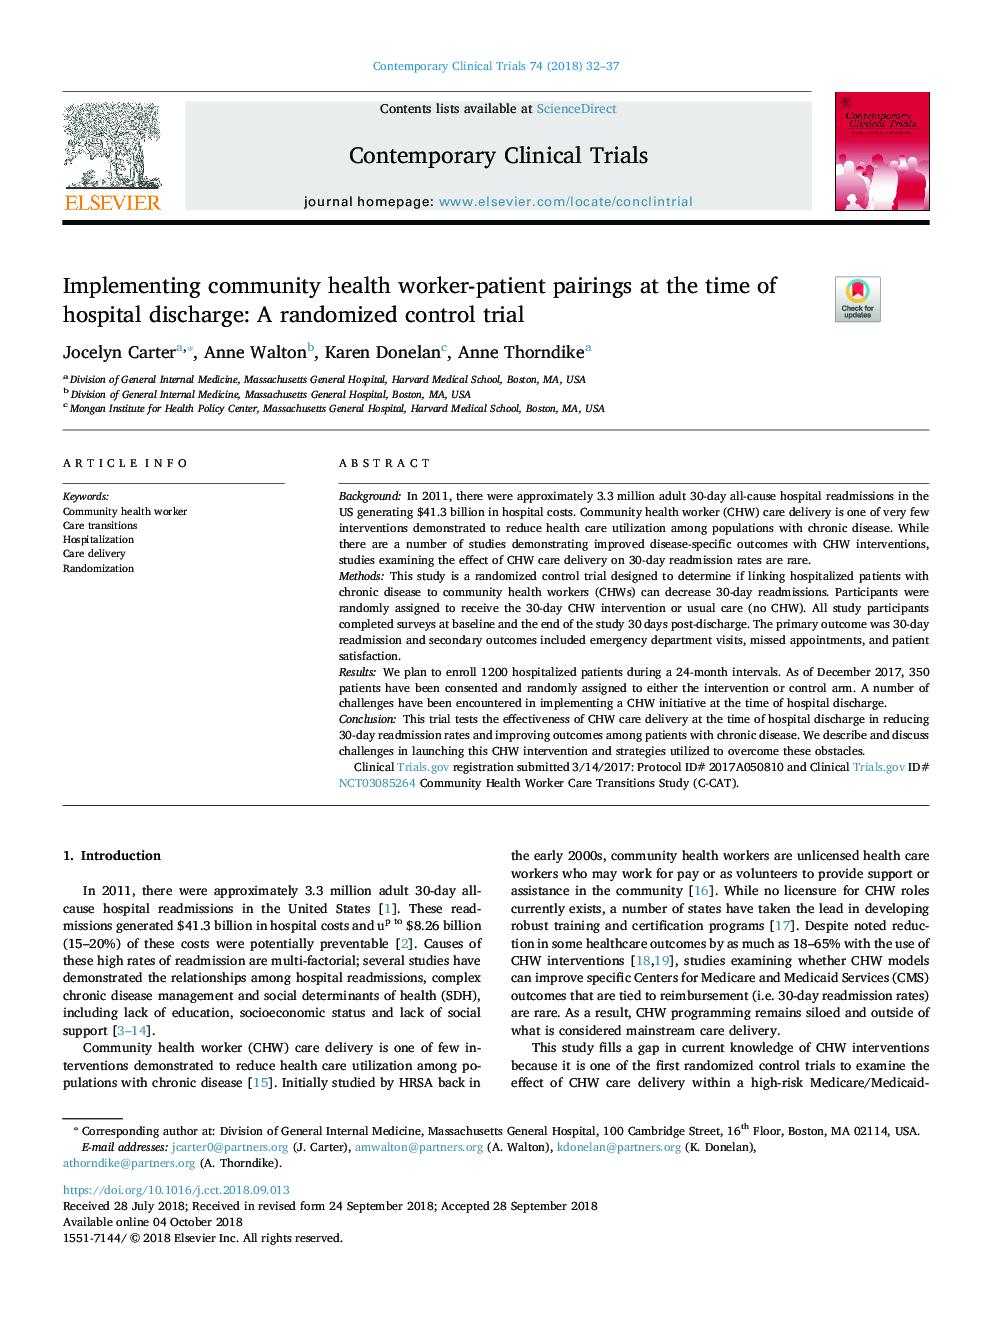 پیاده سازی جراحان بهداشتی کارکنان بهداشت جامعه در زمان ترخیص بیمار: یک مطالعه کنترل تصادفی